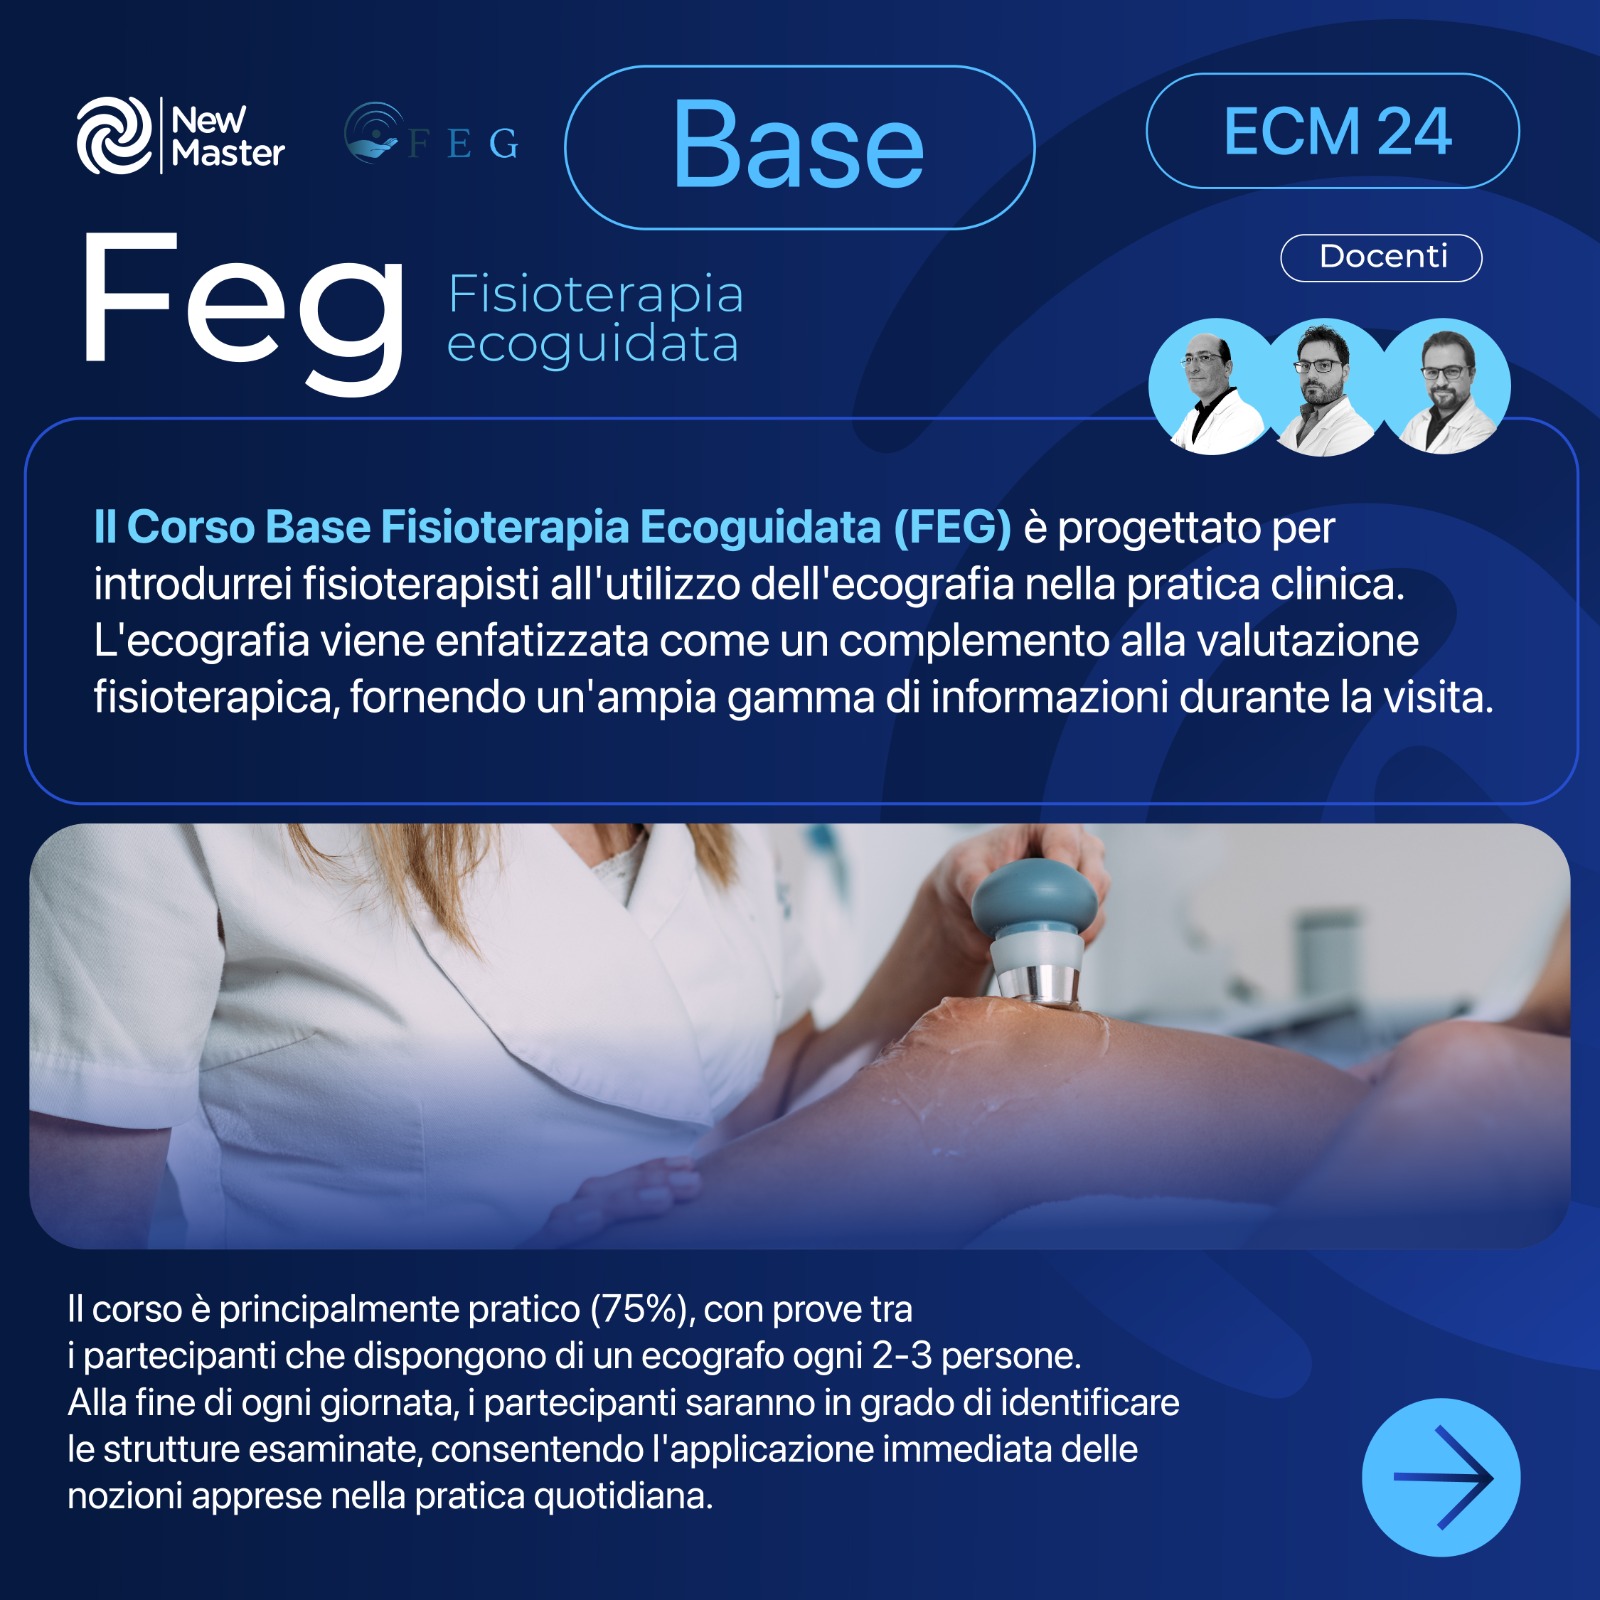 FEG: Fisioterapia Ecoguidata - BASE